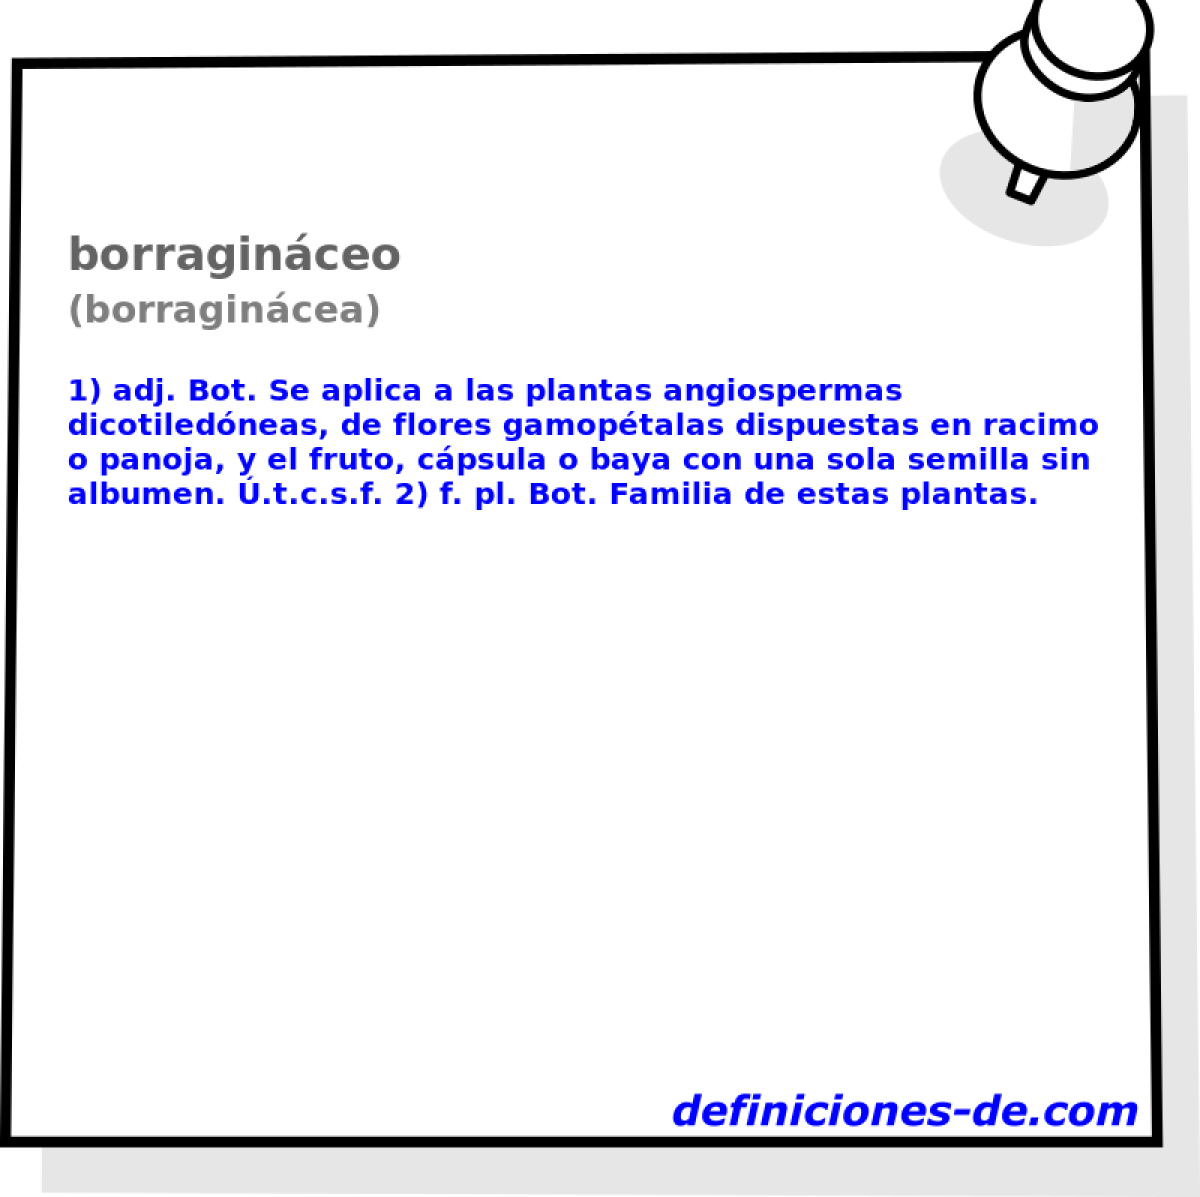 borraginceo (borragincea)